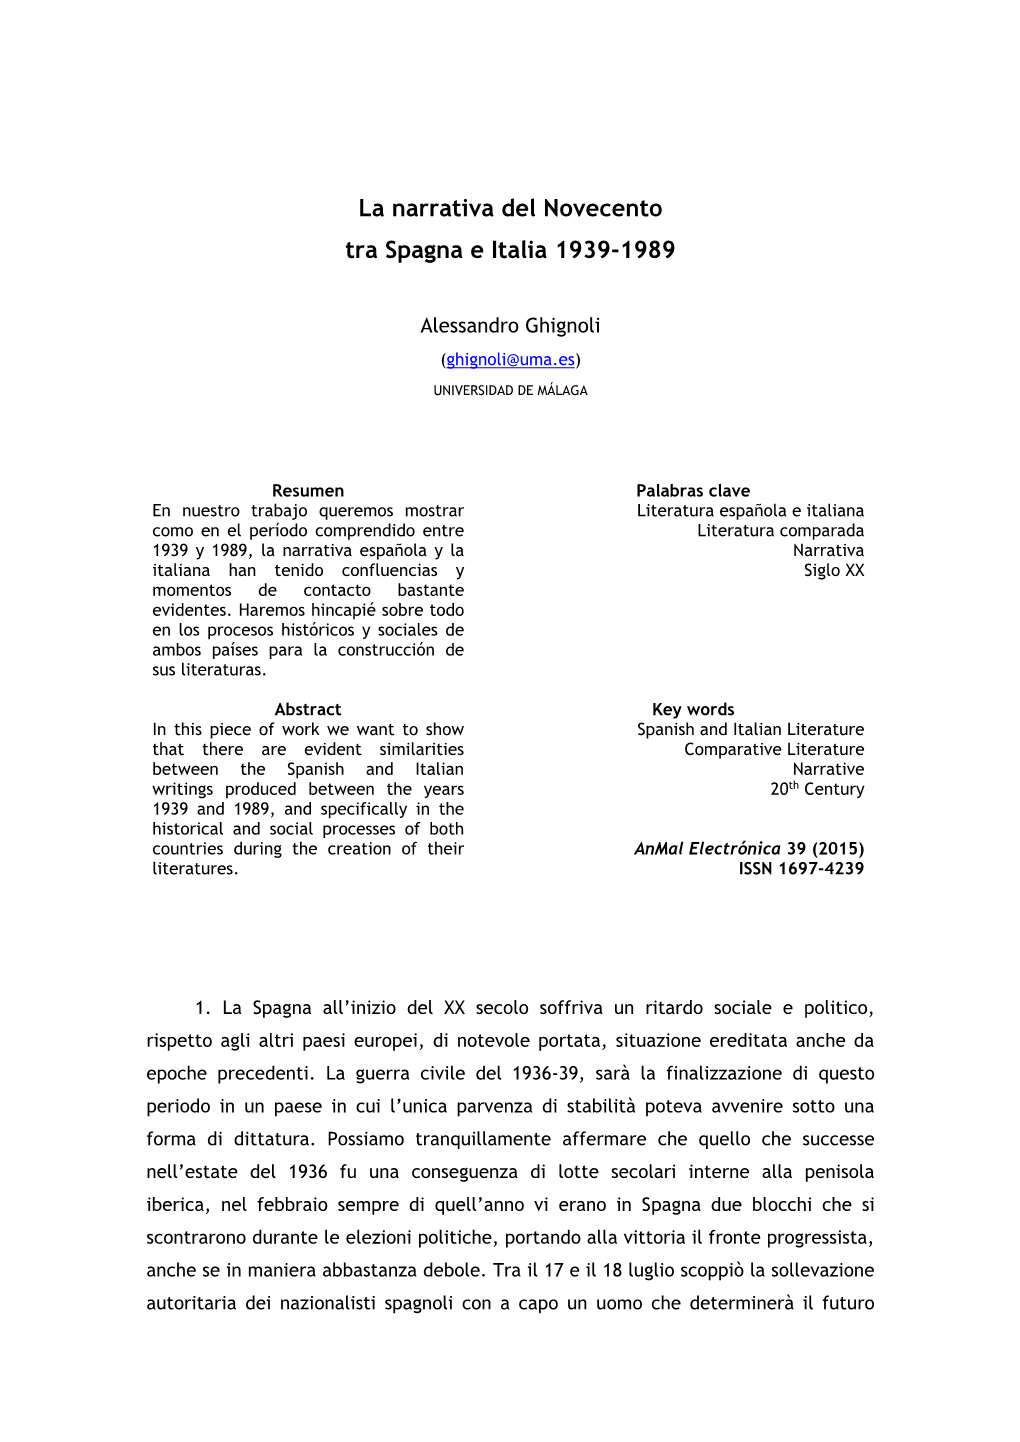 La Narrativa Del Novecento Tra Spagna E Italia 1939-1989